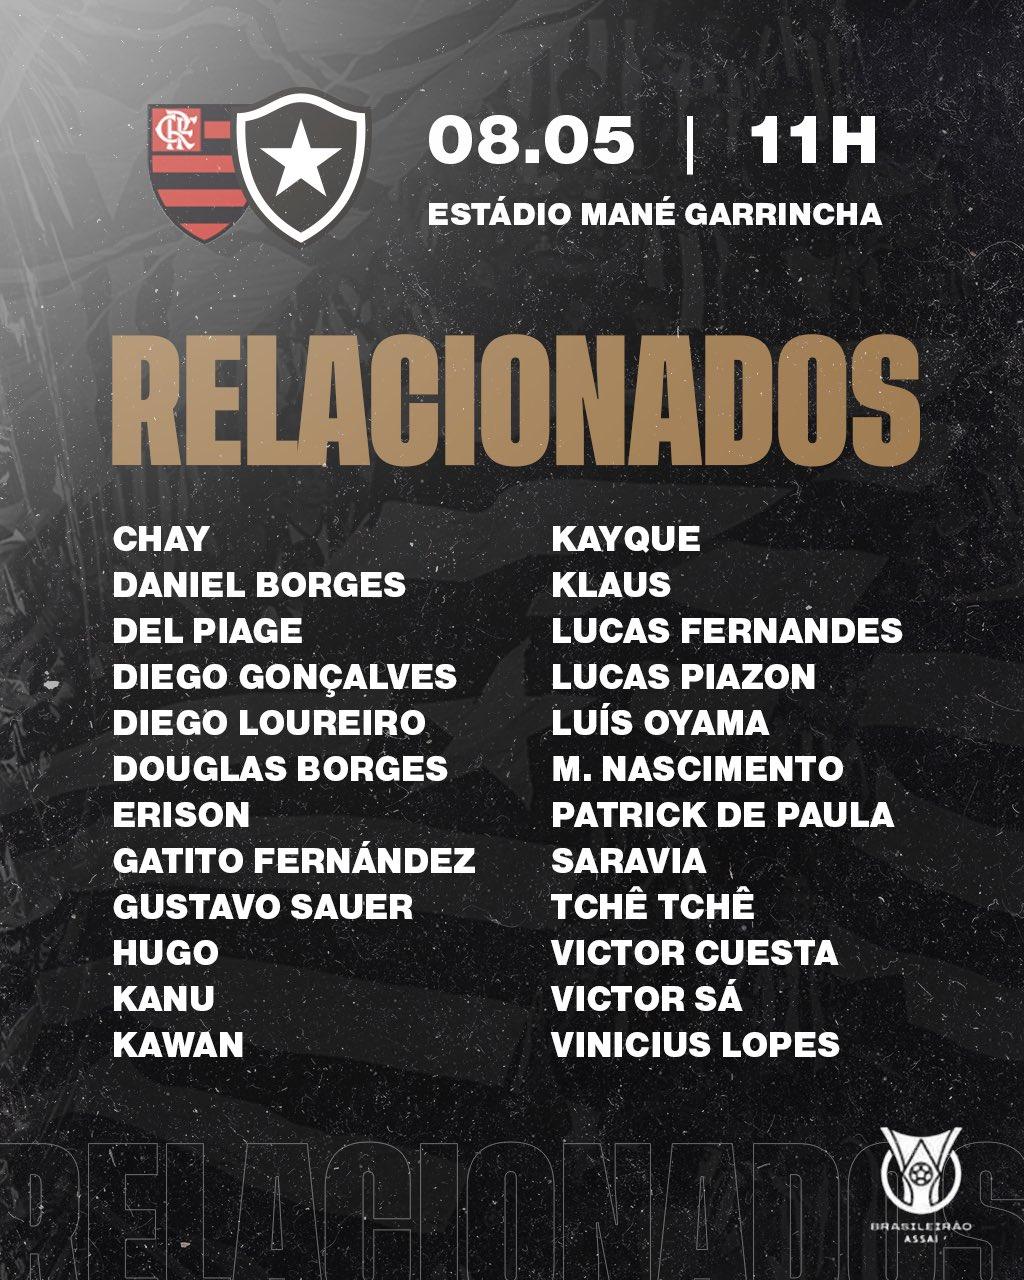 Botafogo - Relacionados